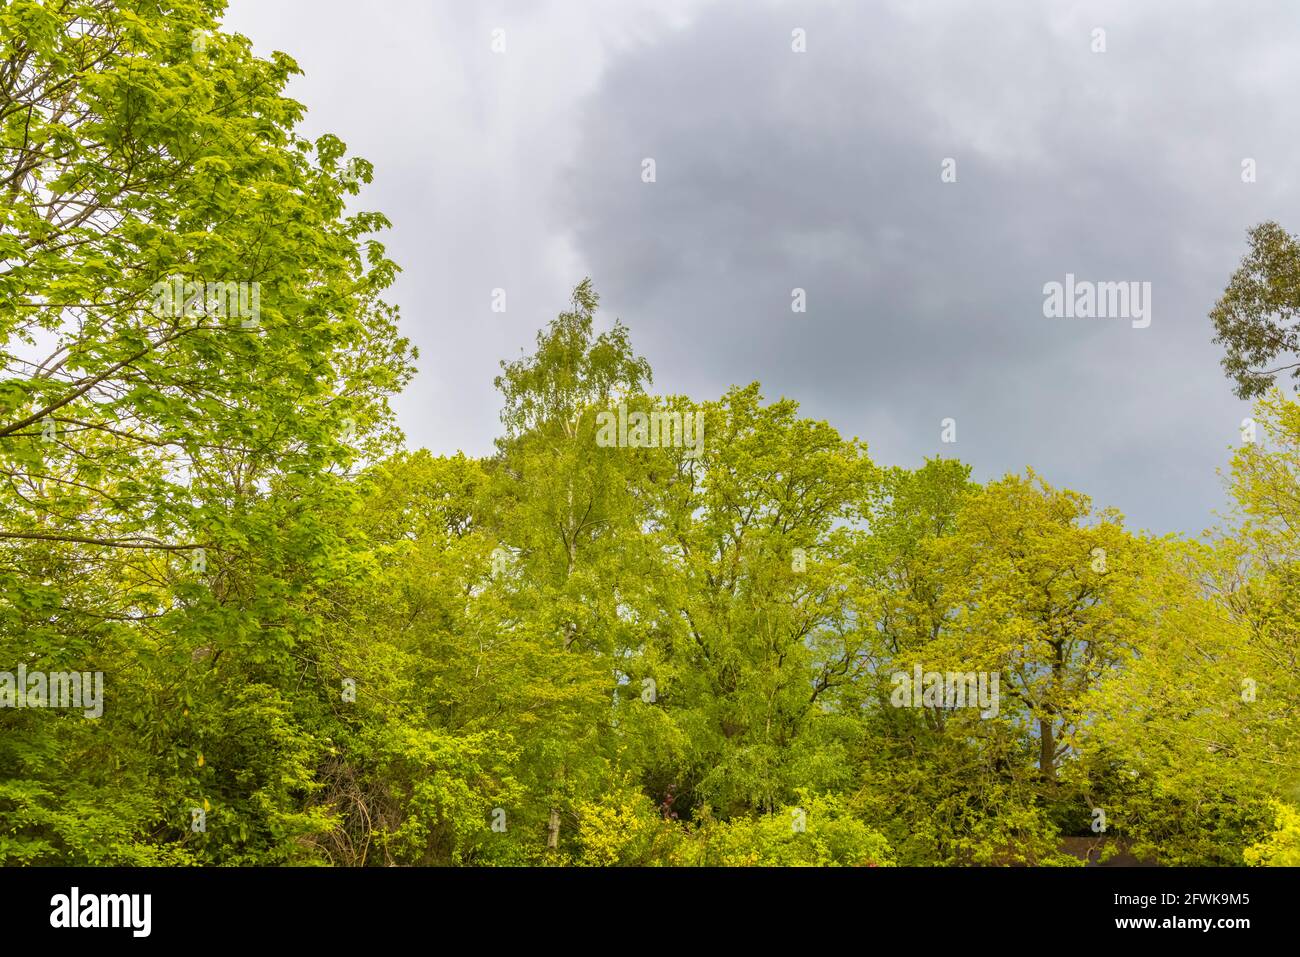 Nuvole grigie minacciose e cielo scuro diurno su un treeline di alberi decidui misti con foglie di primavera verde fresco in Surrey, Inghilterra sud-orientale Foto Stock